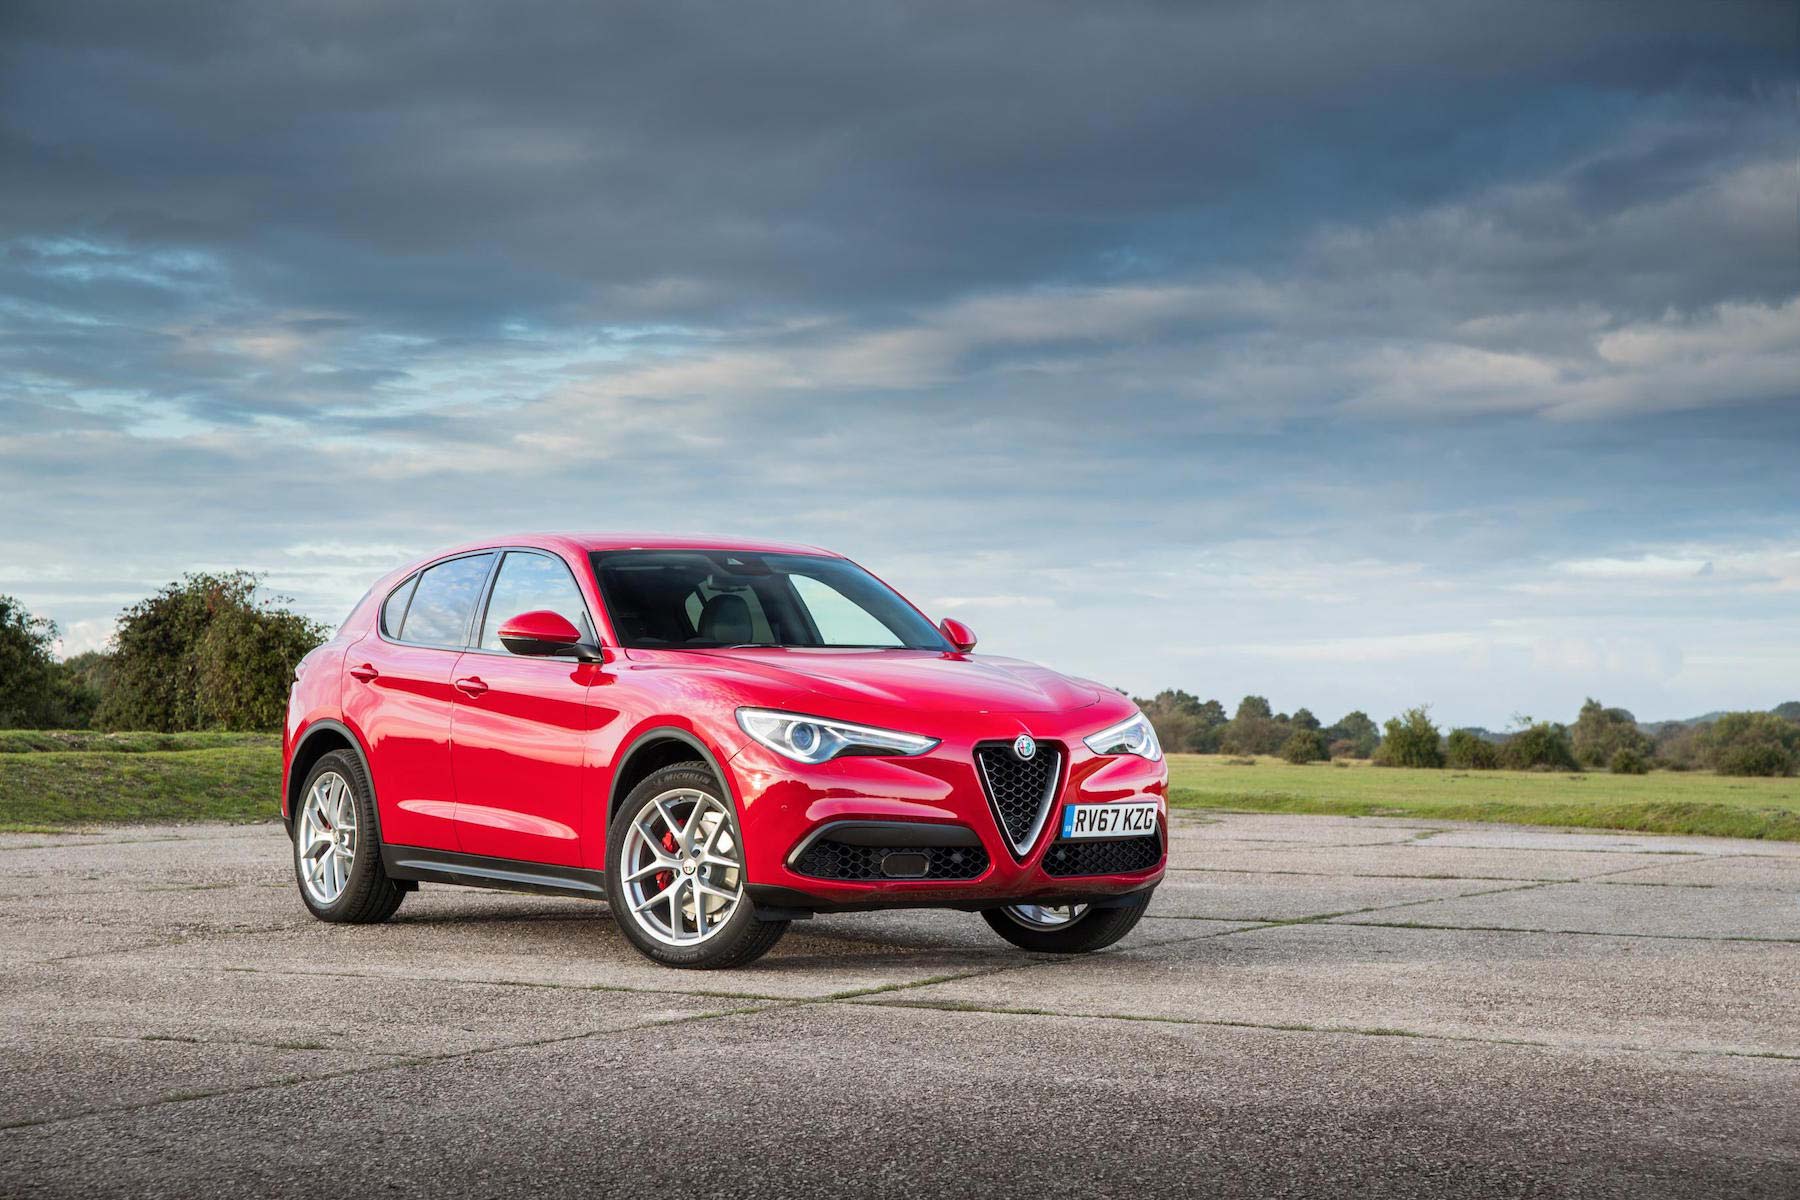 Alfa Romeo partners with Amazon for Stelvio test drive